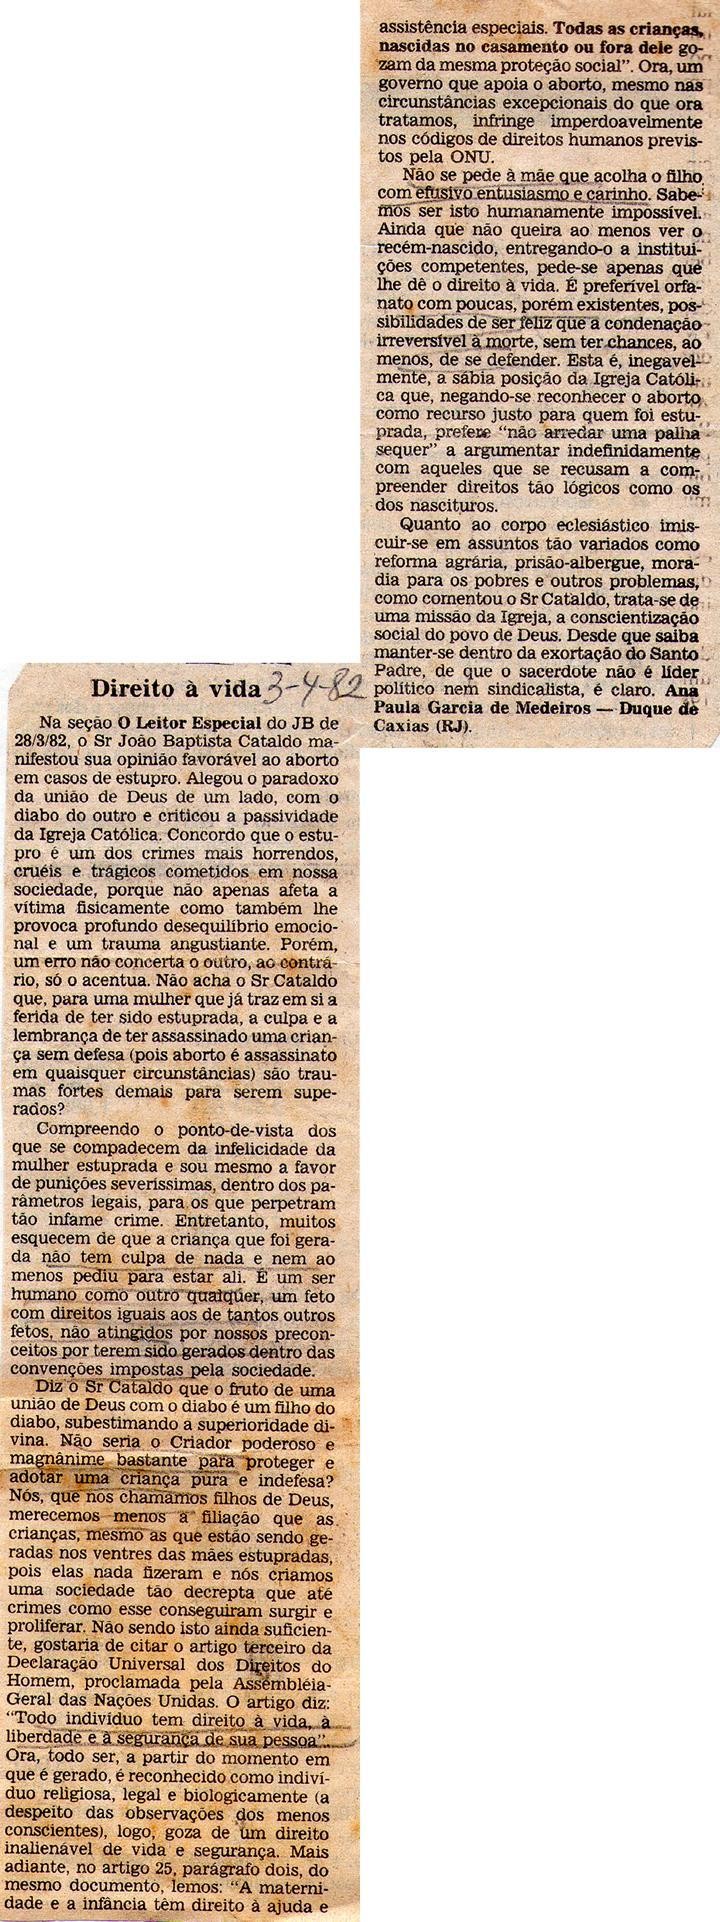 02 de Abril de 1982 - Jornal do Brasil. Direito à vida.